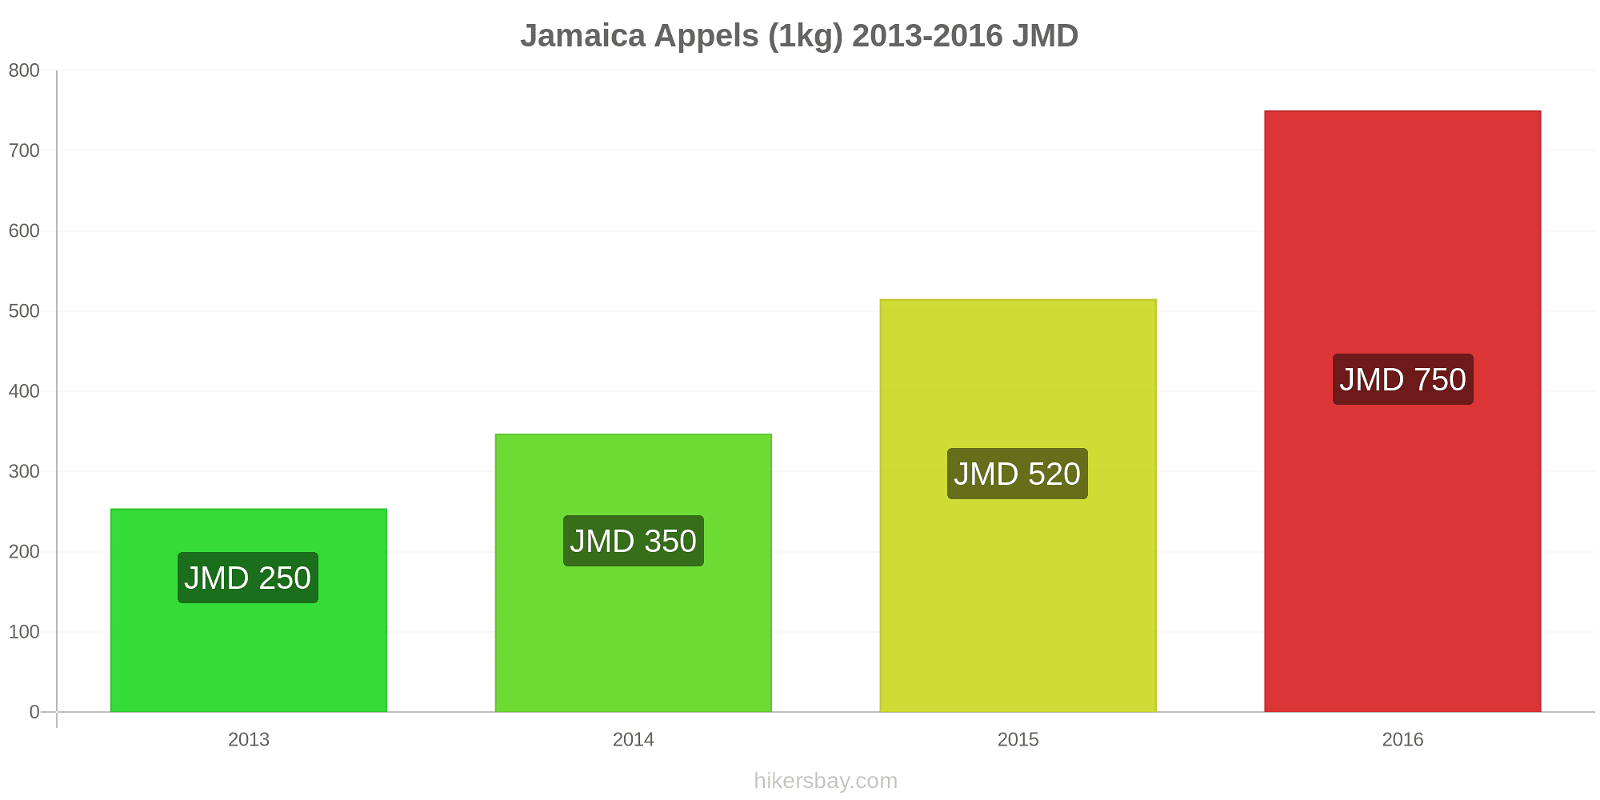 Jamaica prijswijzigingen Appels (1kg) hikersbay.com